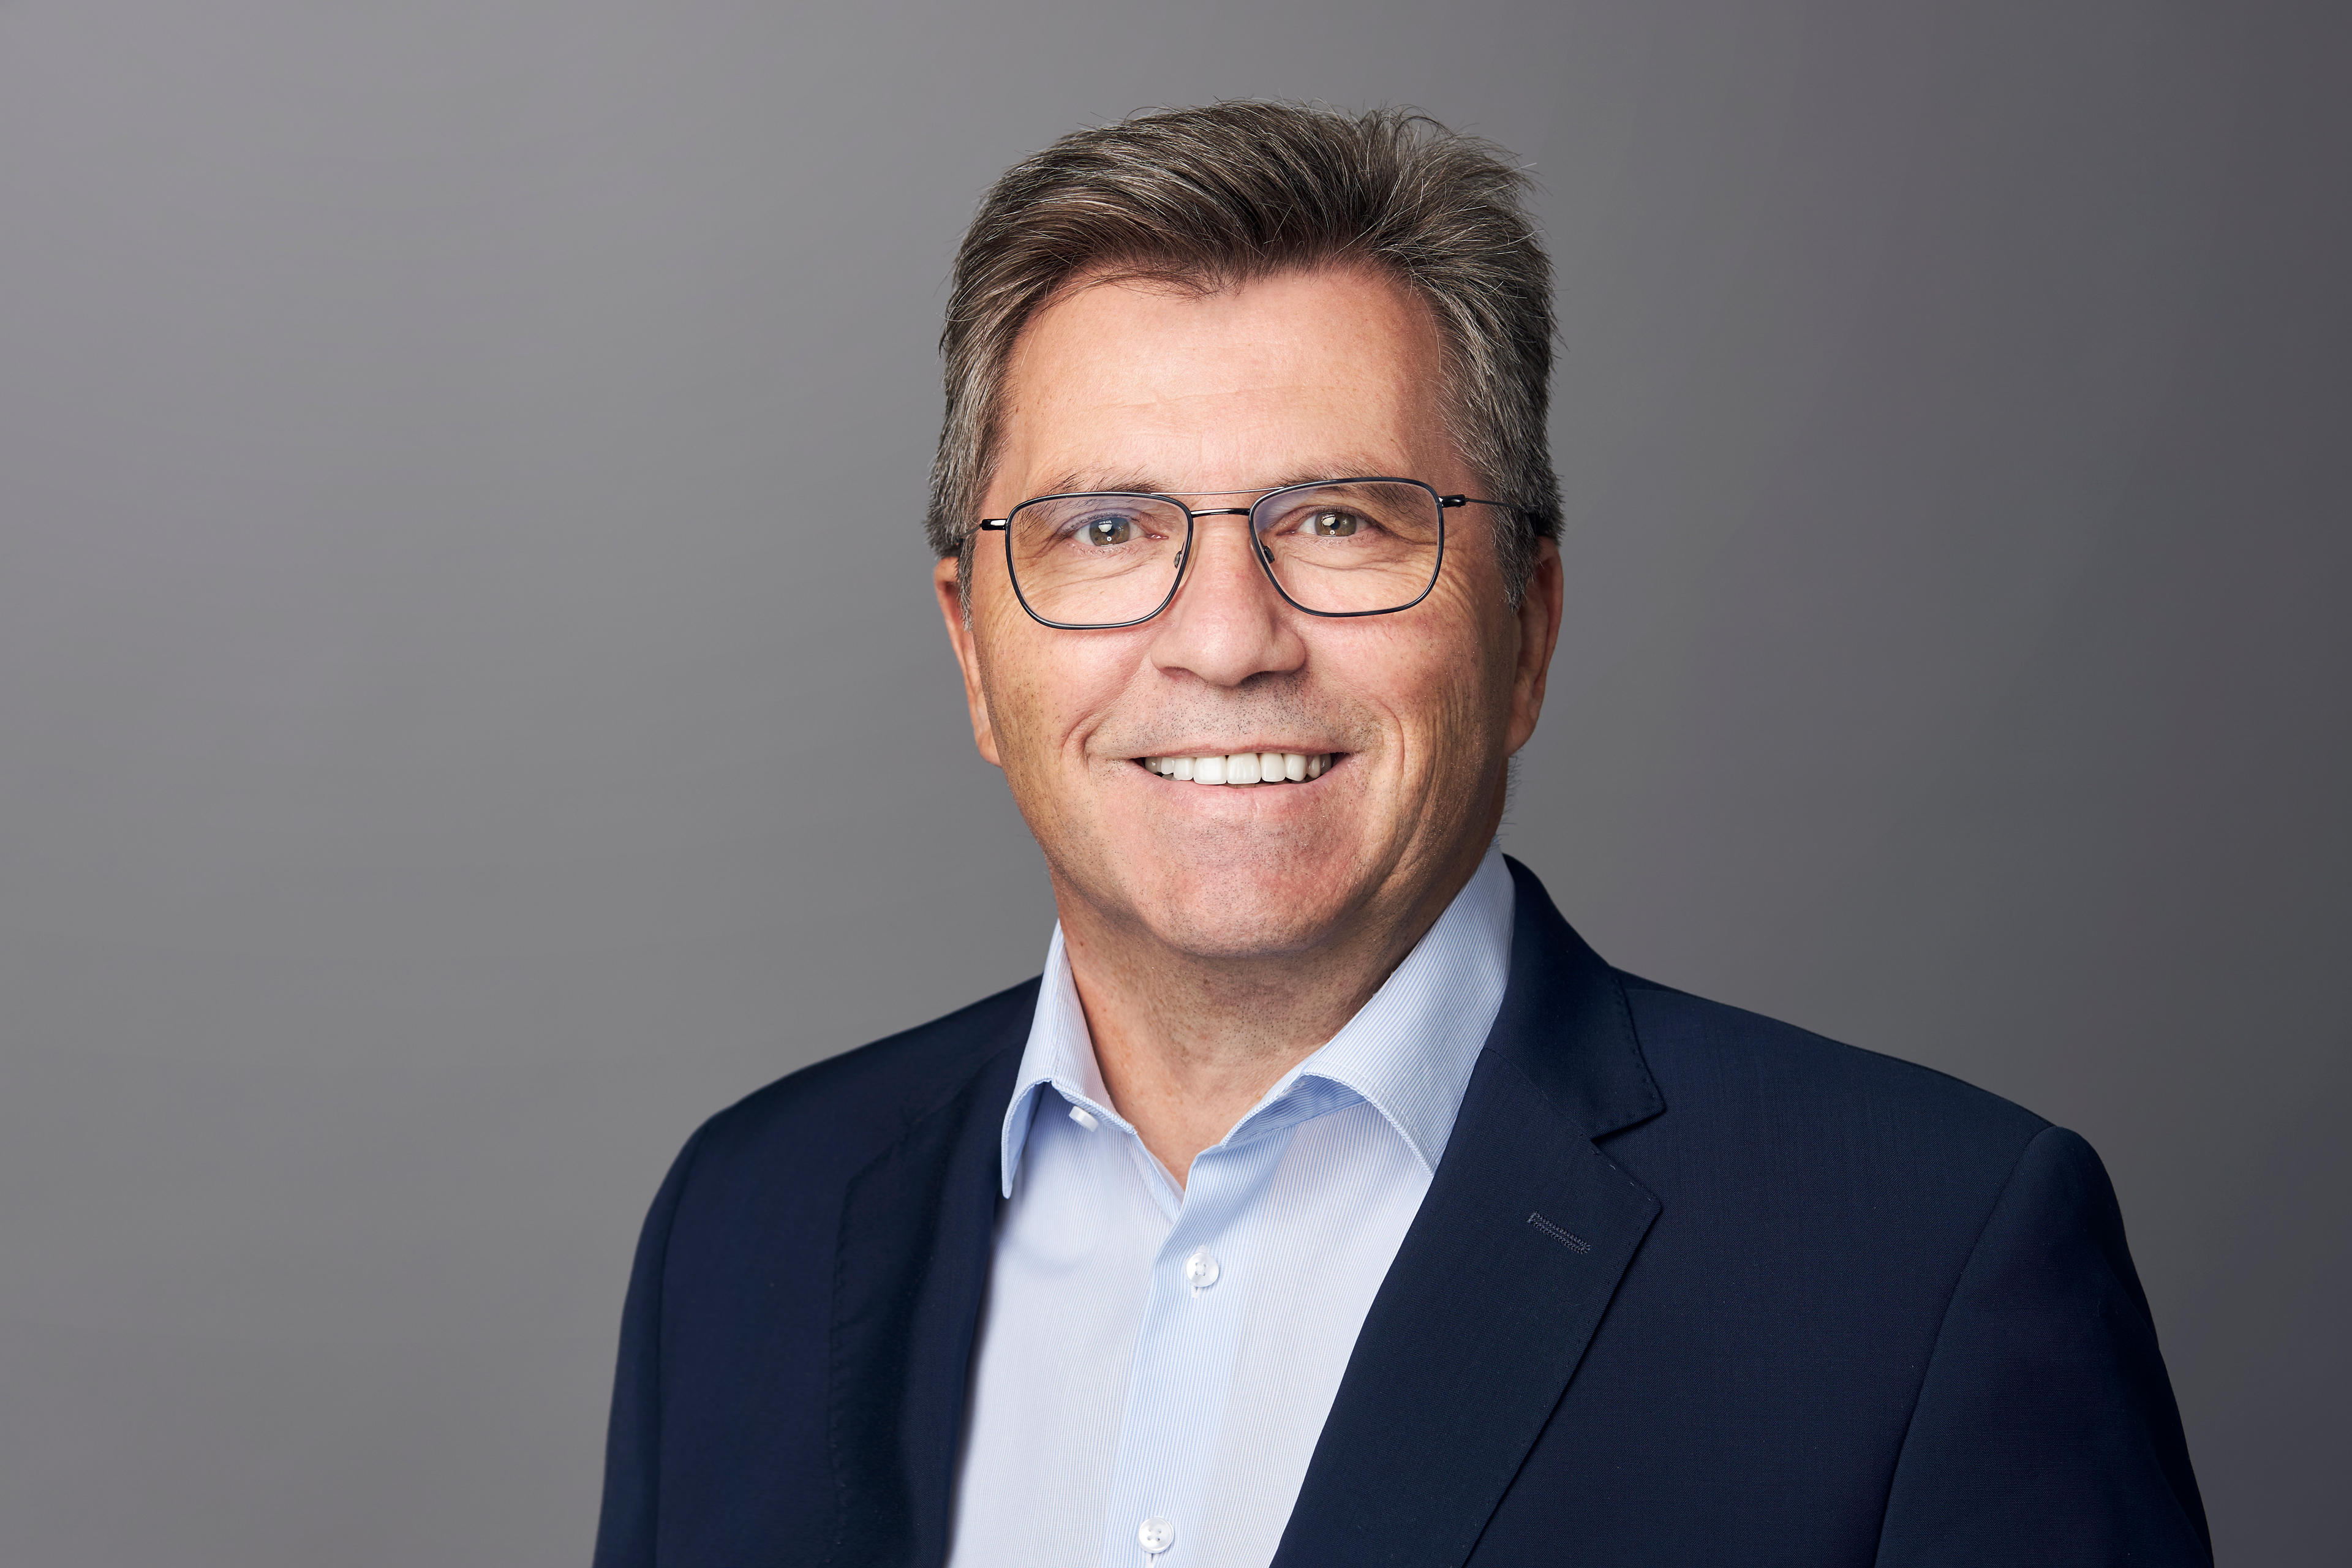 Als ehemalige Führungskraft wechselte Rainer Englert 1997 zur Signal Iduna Döbler&Voß nach Gütersloh. Er ist Experte für den Bereich der gewerblichen Sachversicherung.